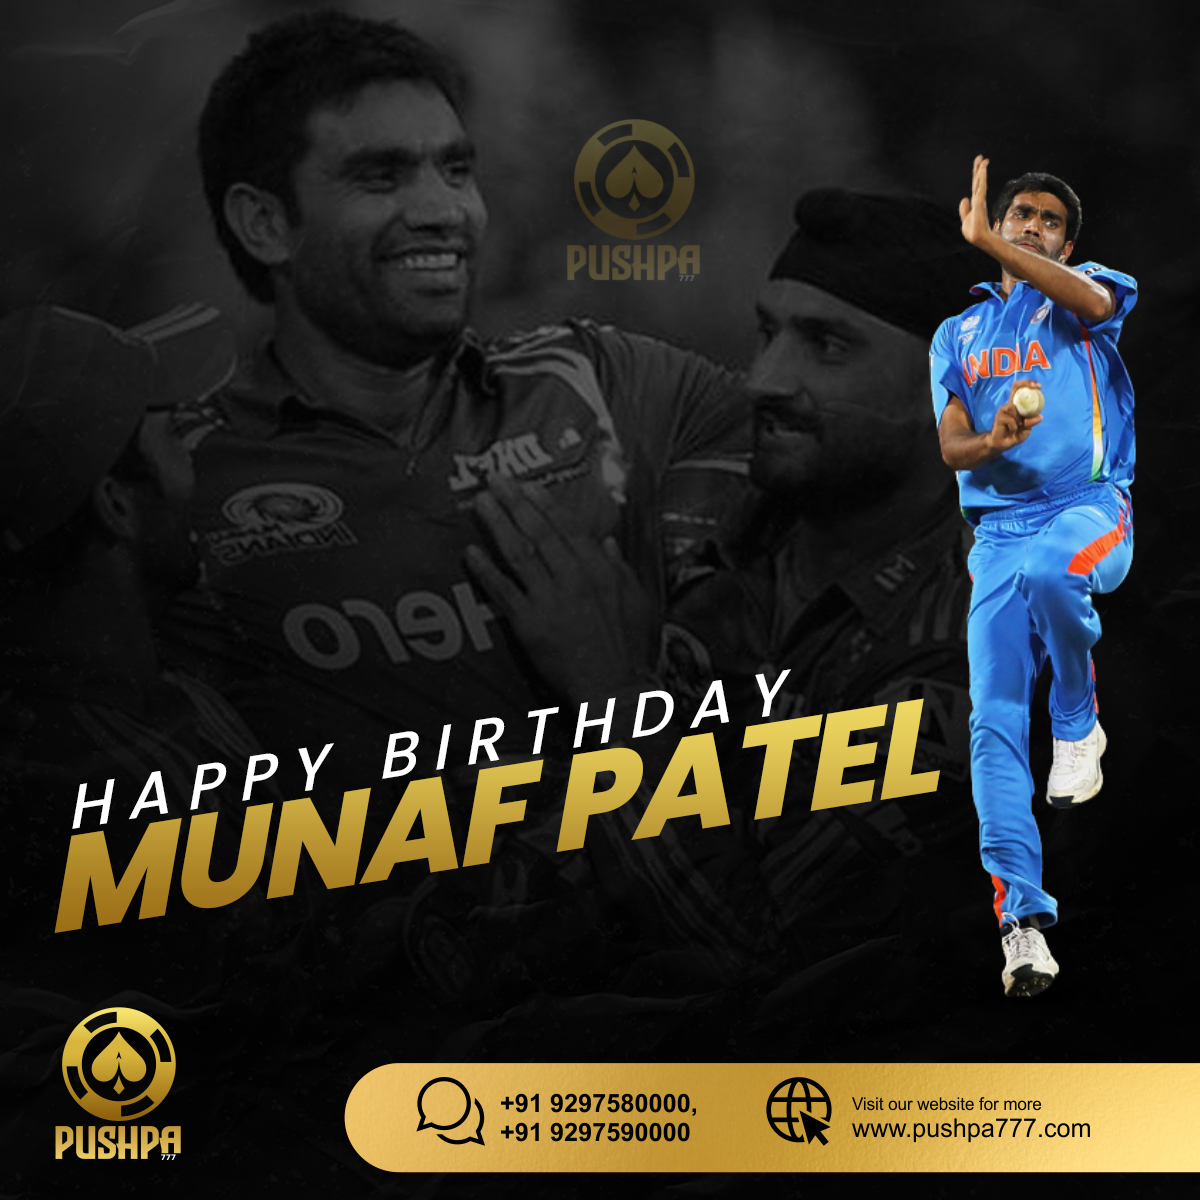 Happy birthday to former fast bowler, Munaf Patel       